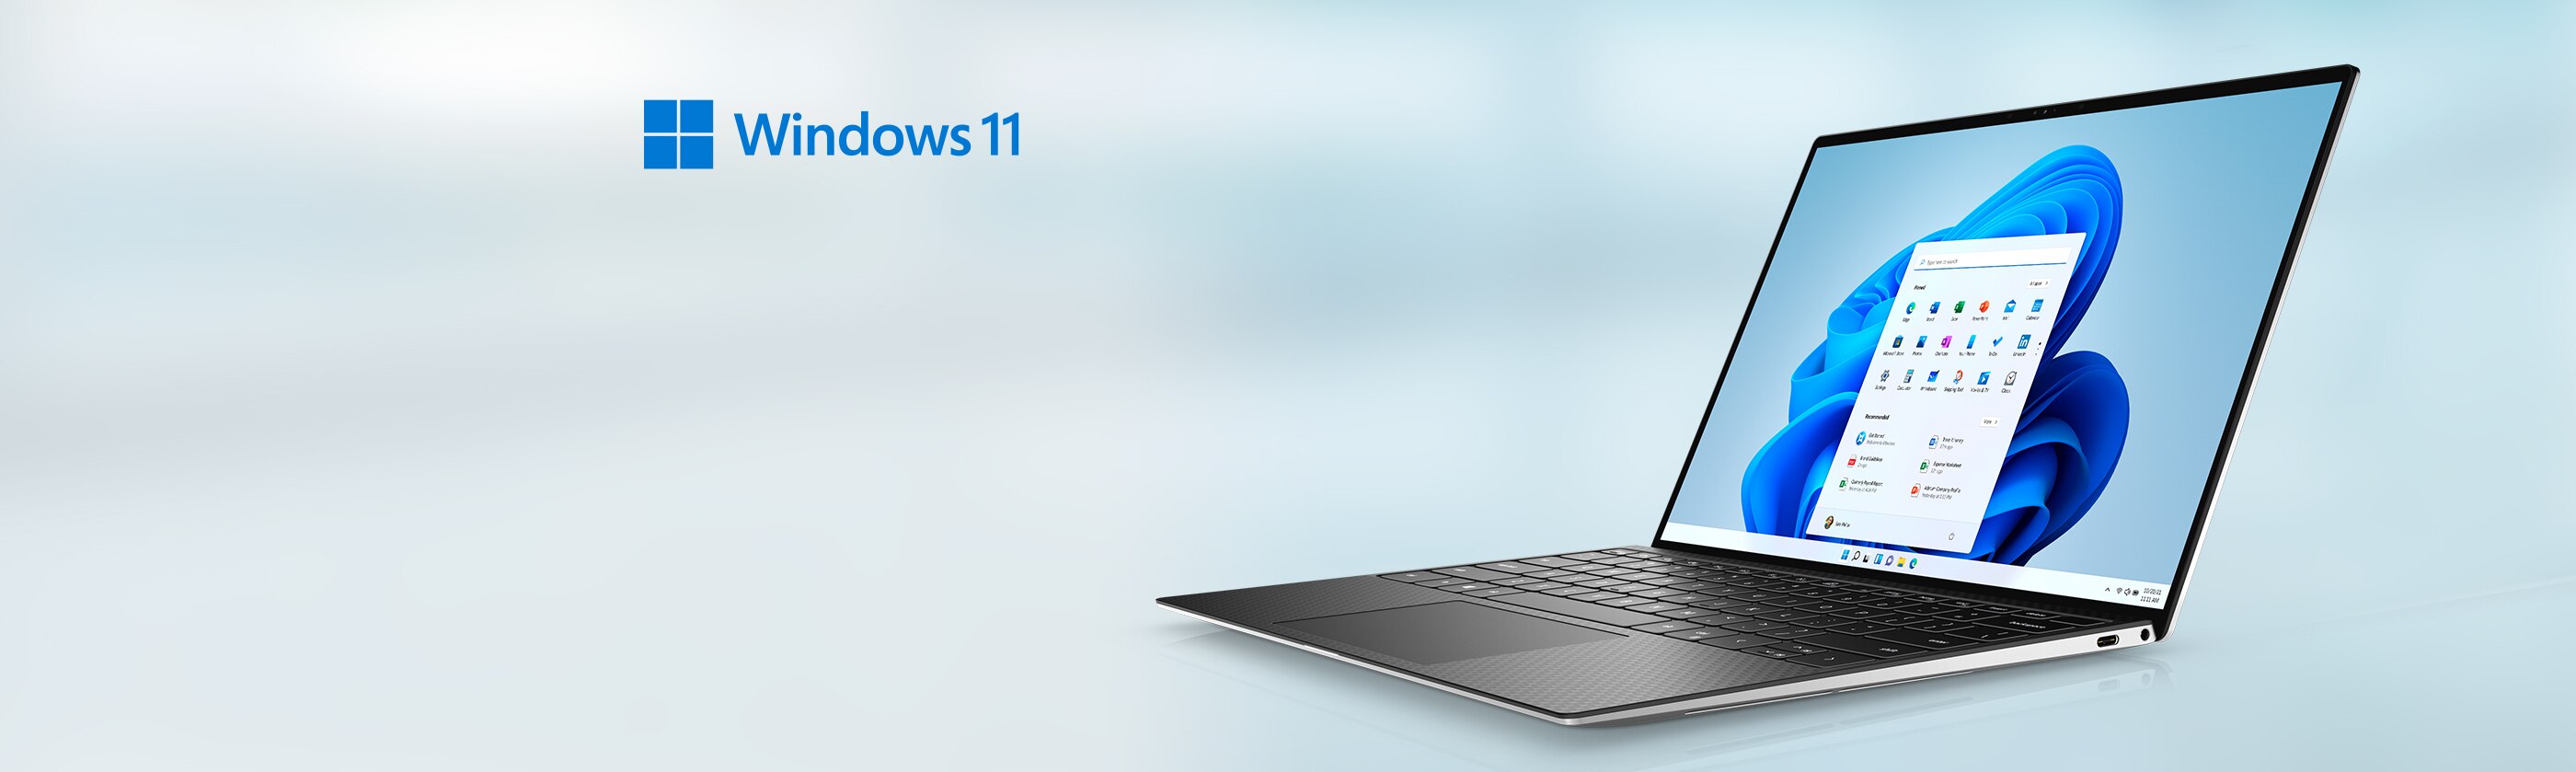 Compatibel met natuurlijk warmte Upgraden naar Windows 11 | Dell Nederland